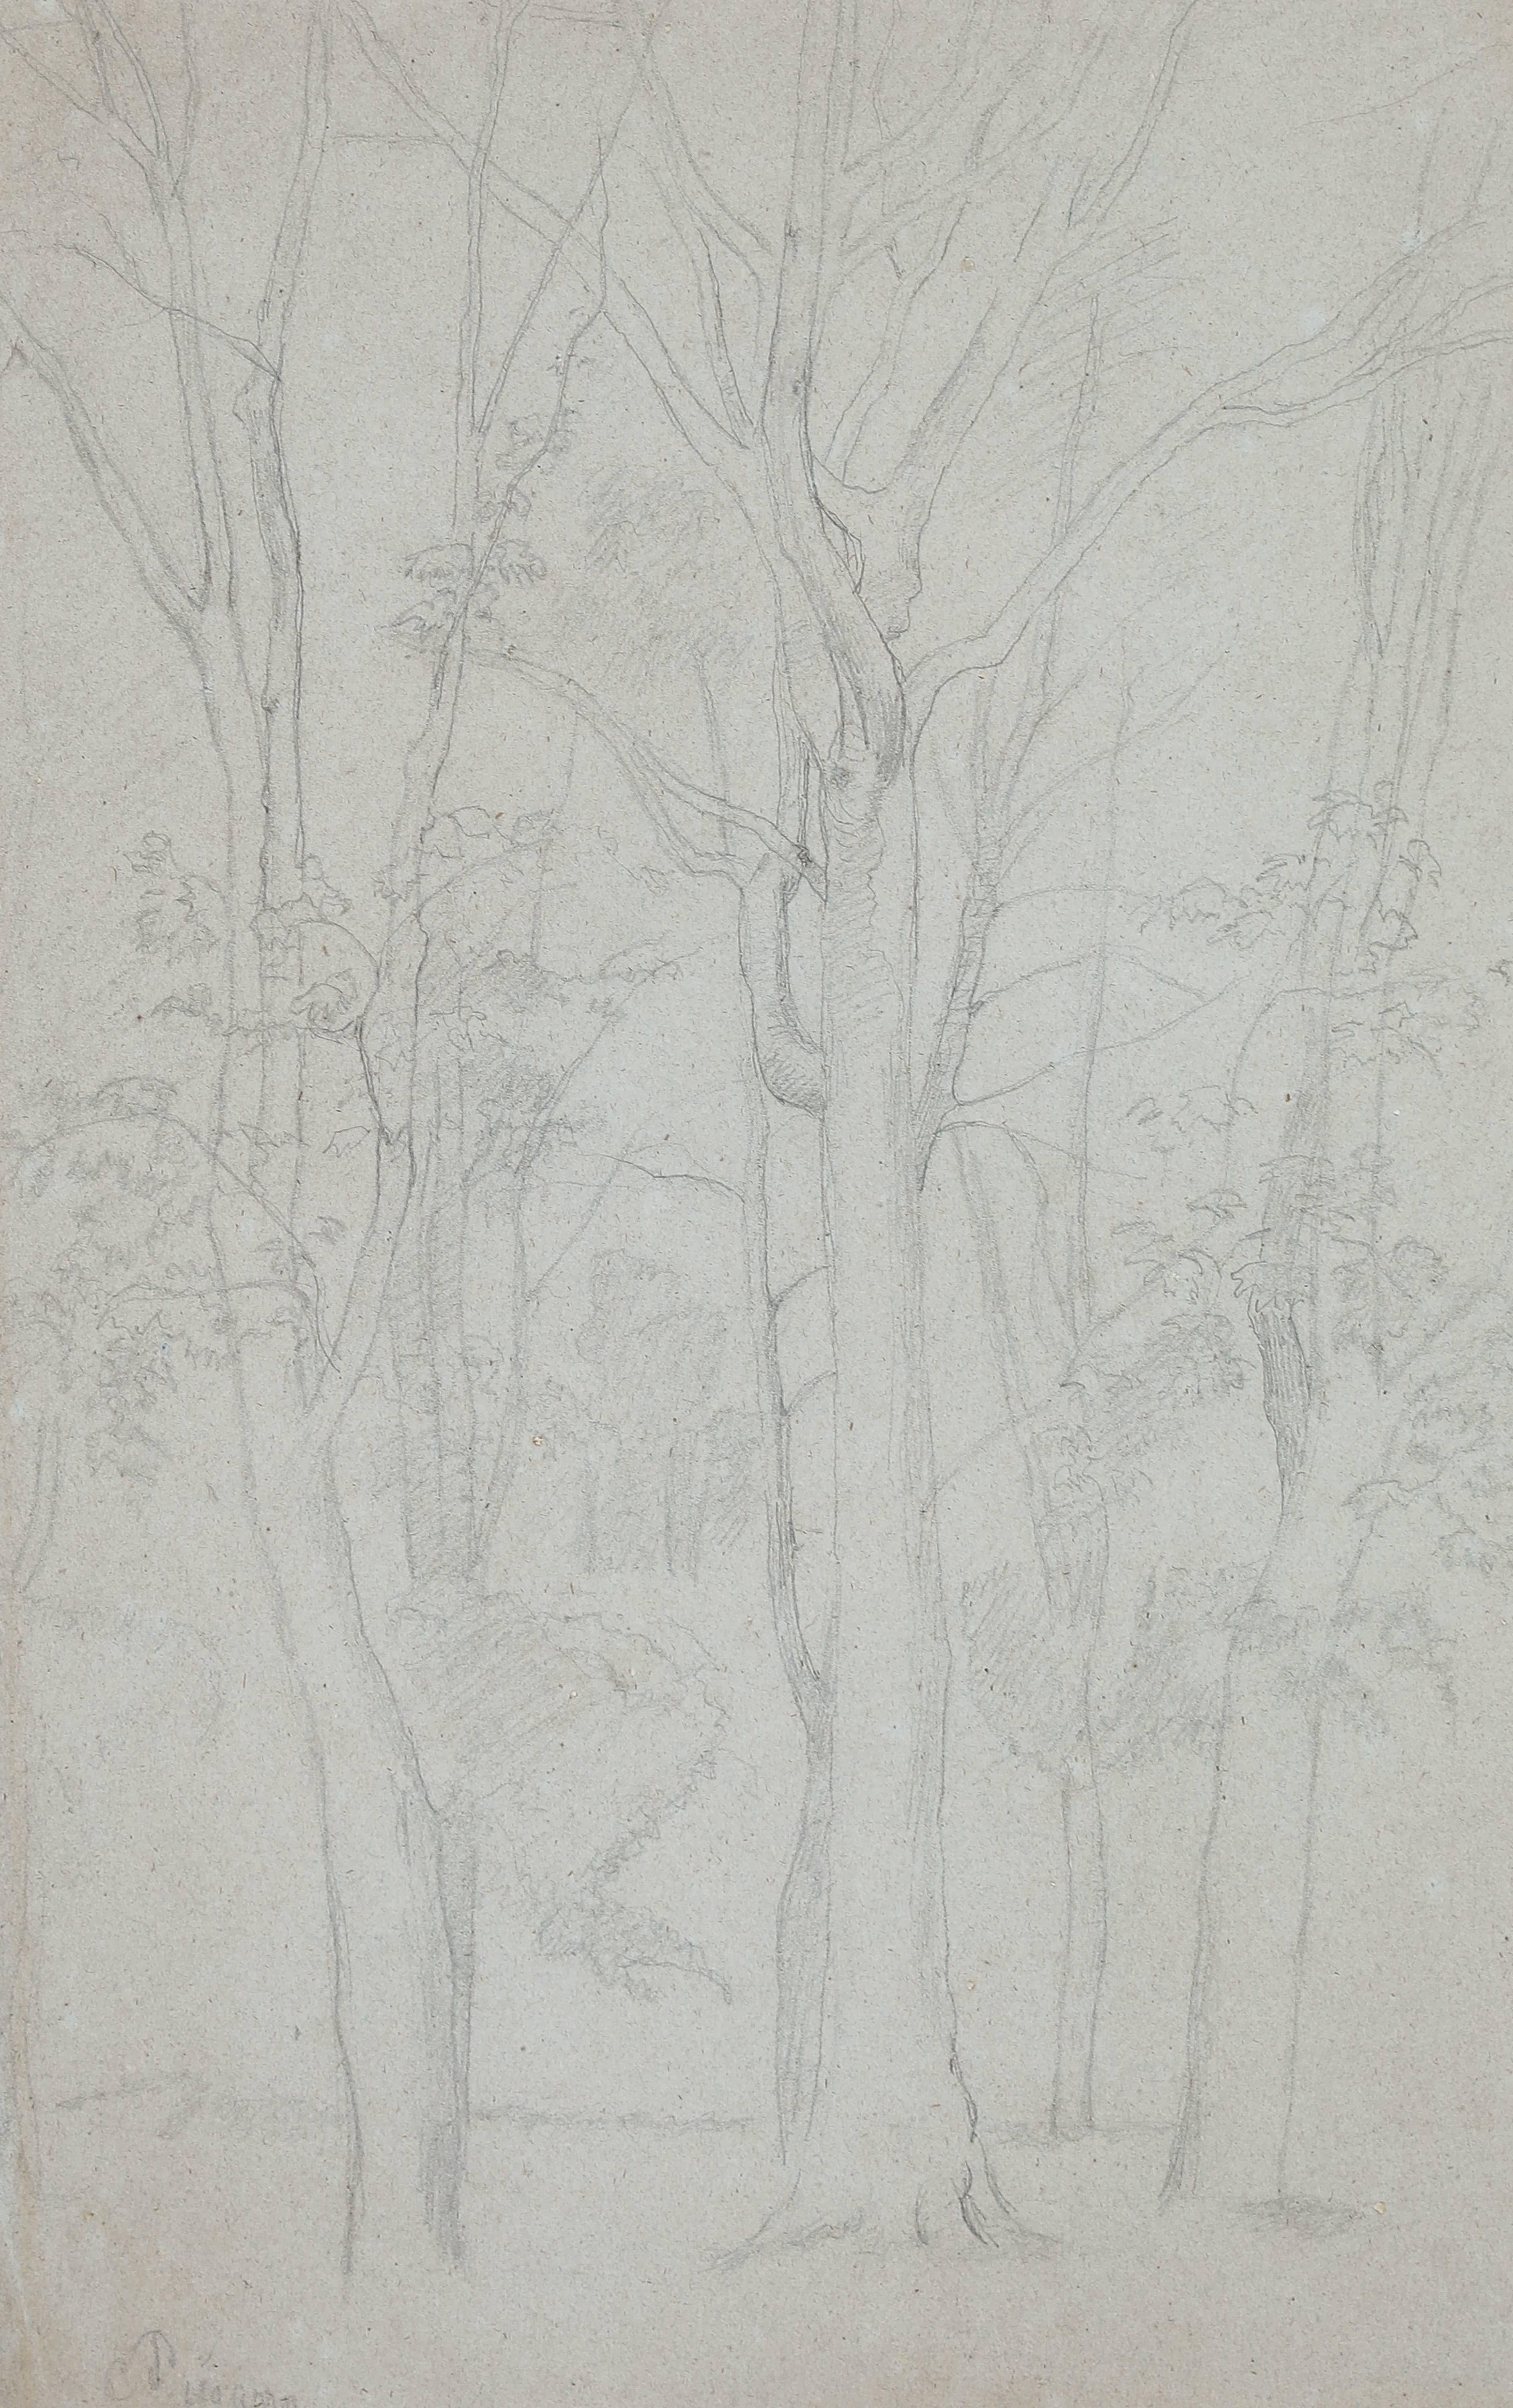 Arbres von Camille Pissarro (1830-1903)
Bleistift auf Papier
44 x 28 cm (17 ³/₈ x 11 Zoll)
Signiert unten links, C. Pissarro
Ausgeführt um 1859

Beeinflusst von der französischen Landschaft, von Corot und der Schule von Barbizon, zeigte Camille